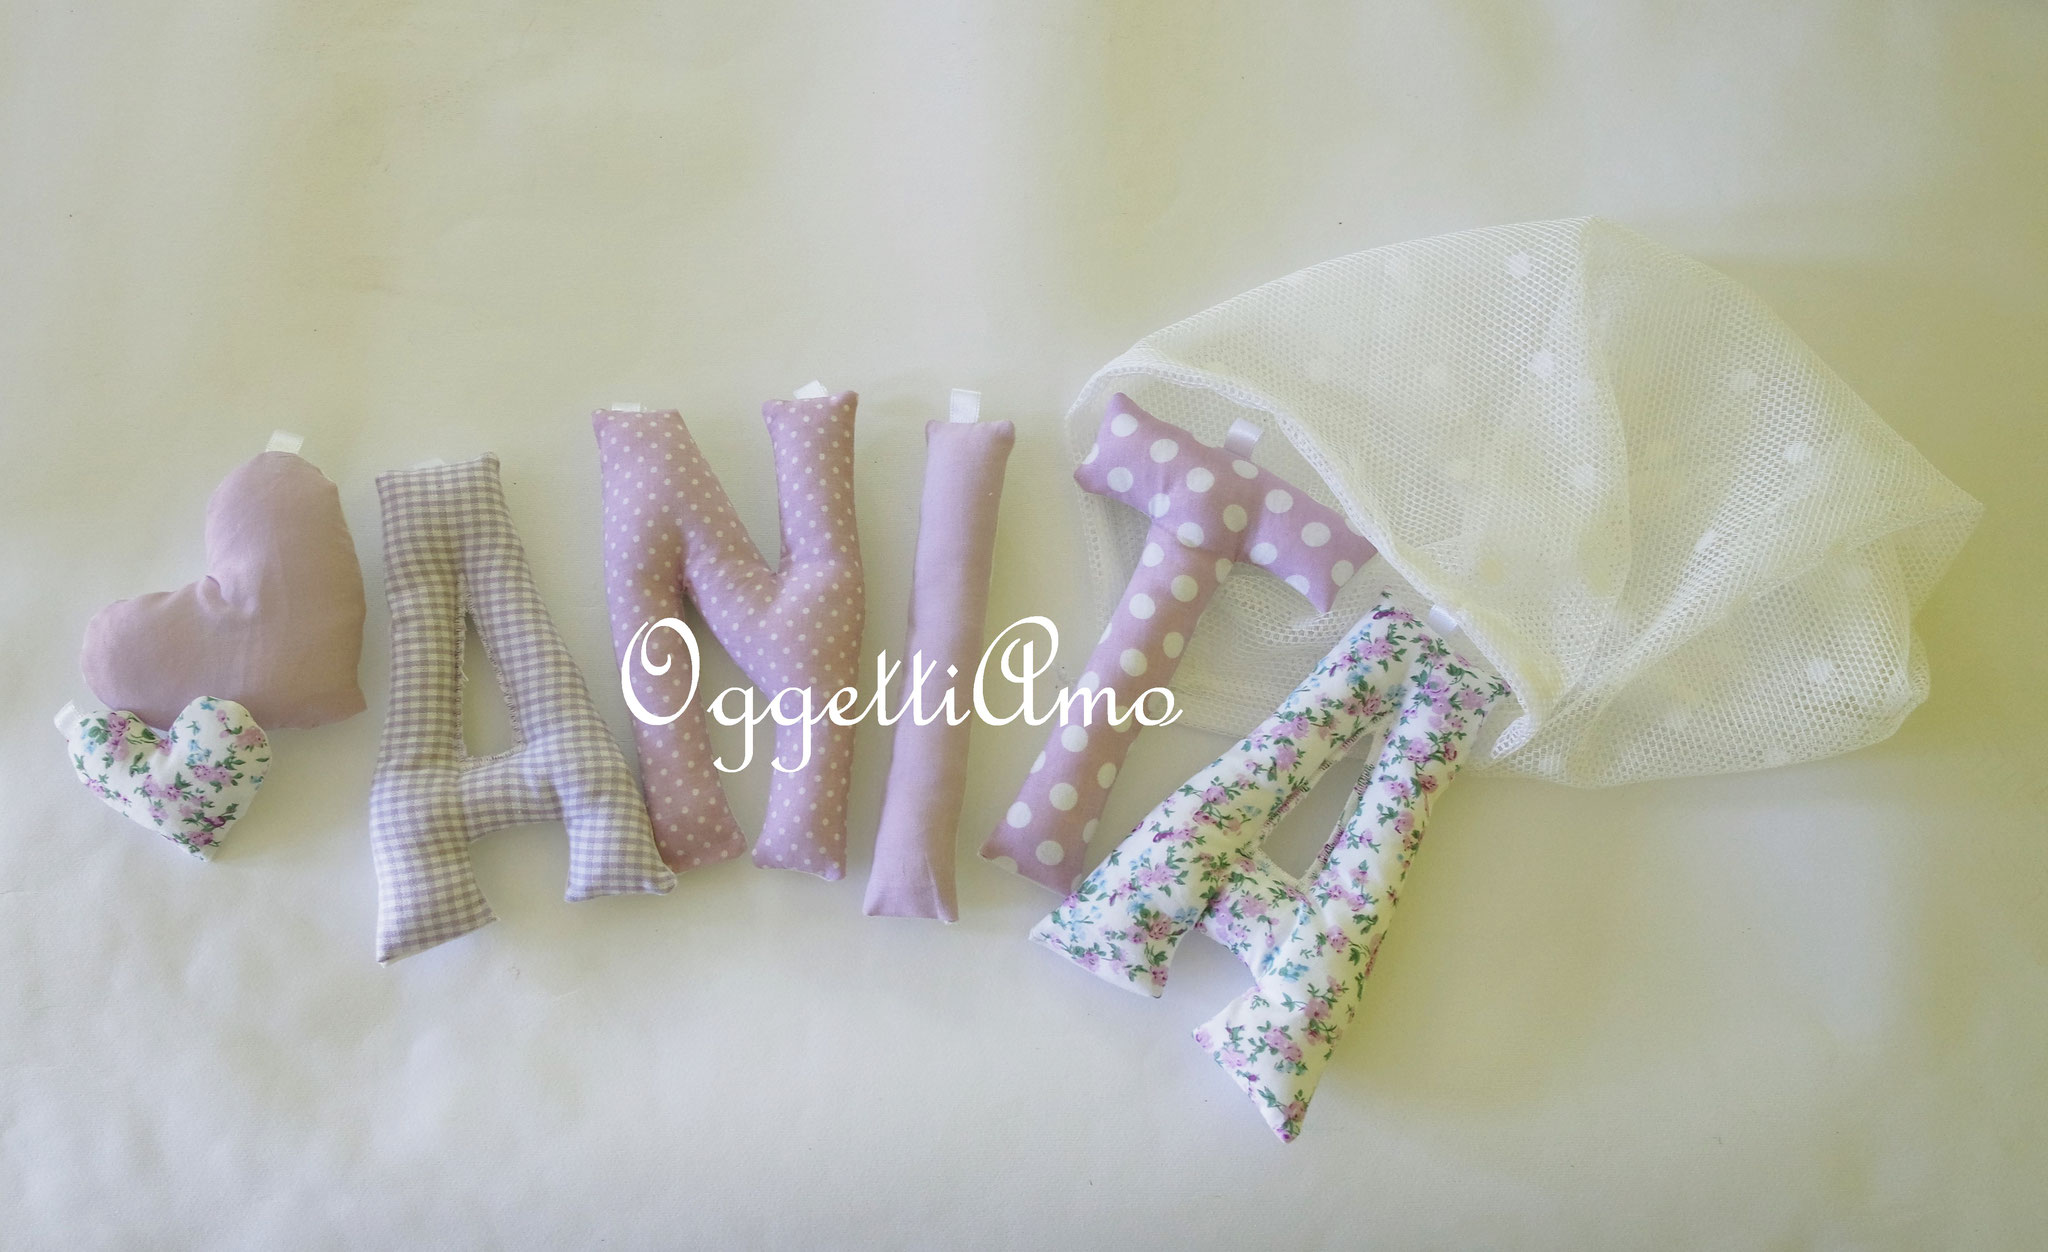 Una ghirlanda di lettere di stoffa imbottite lilla per Anita